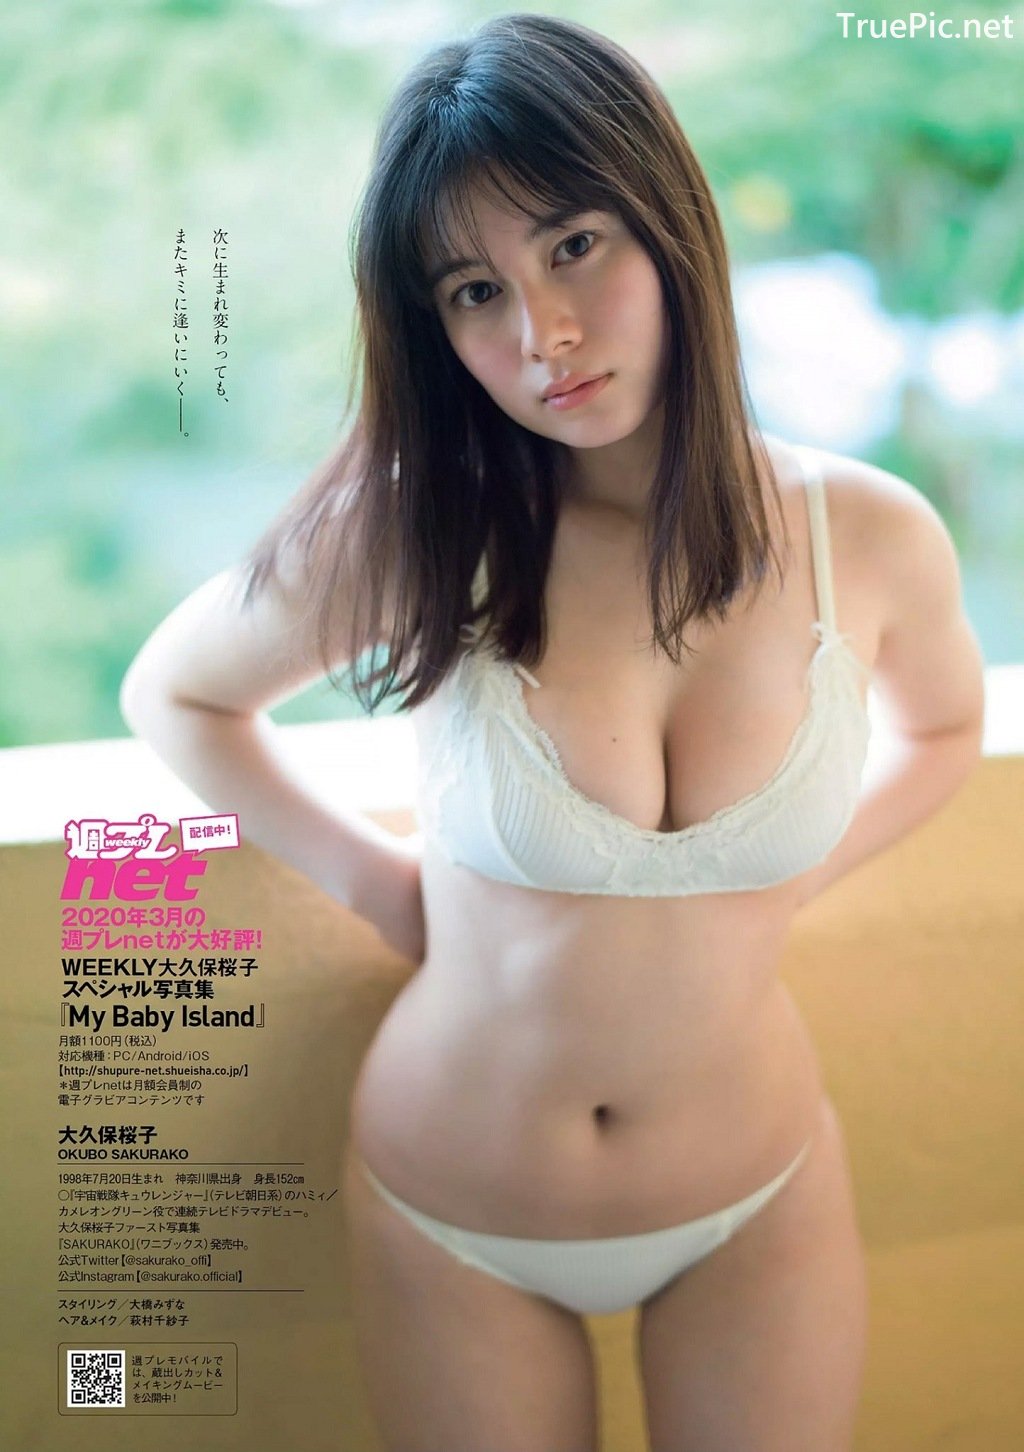 Image Japanese Actress - Okubo Sakurako - [Digital-PB] My Baby Island - TruePic.net - Picture-48